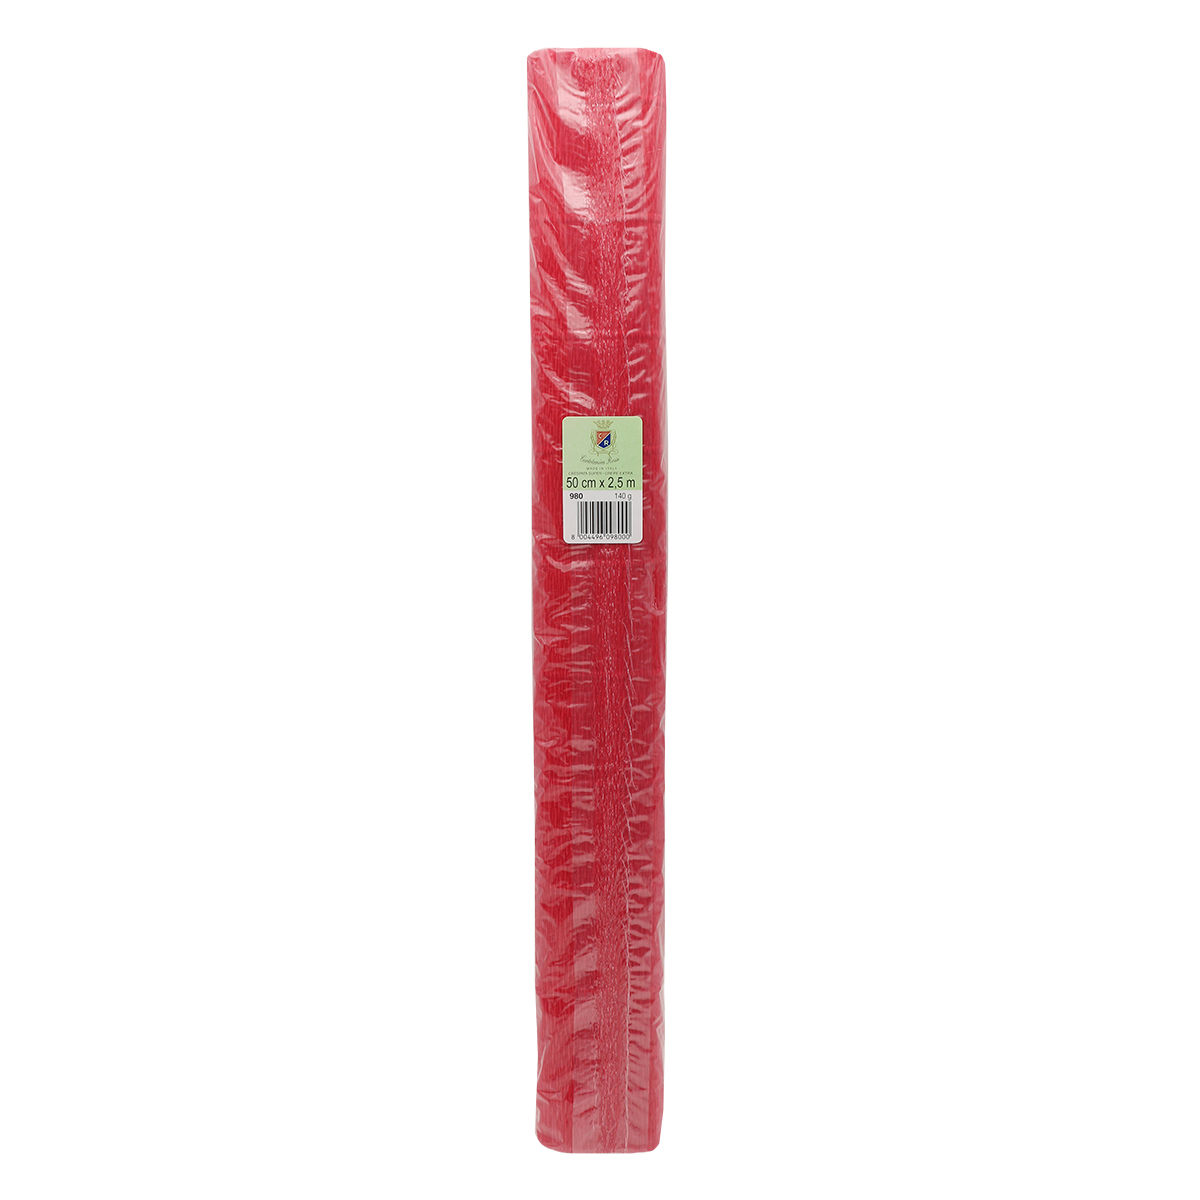 Бумага Айрис гофрированная креповая для творчества 50 см х 2.5 м 140 г красная - фото 4